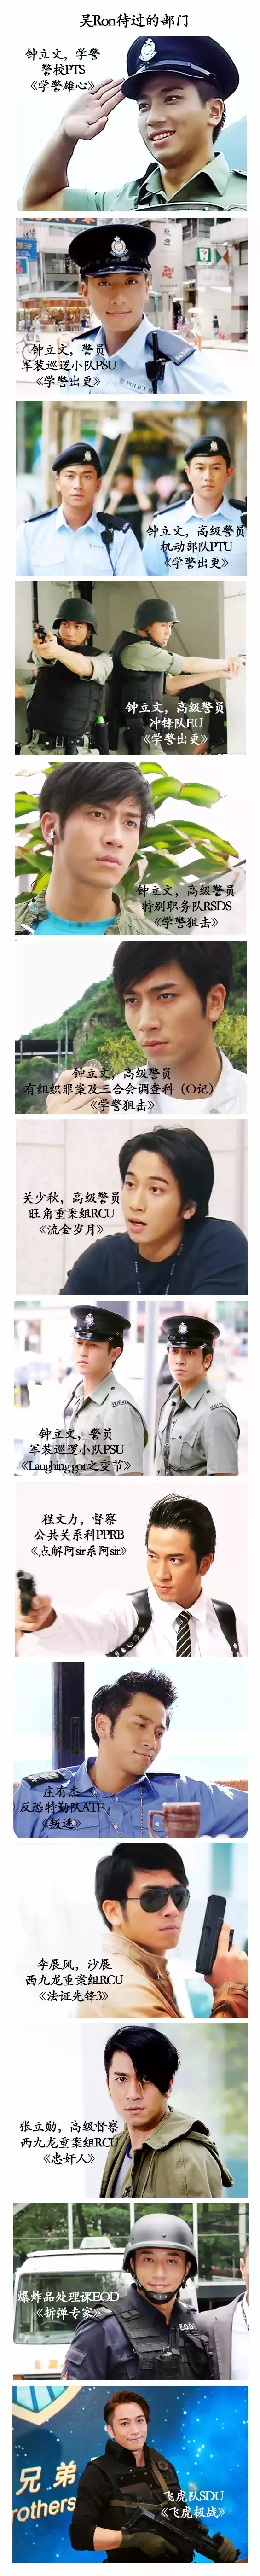 TVB中那些年的西九龙重案组谜底终于解开了